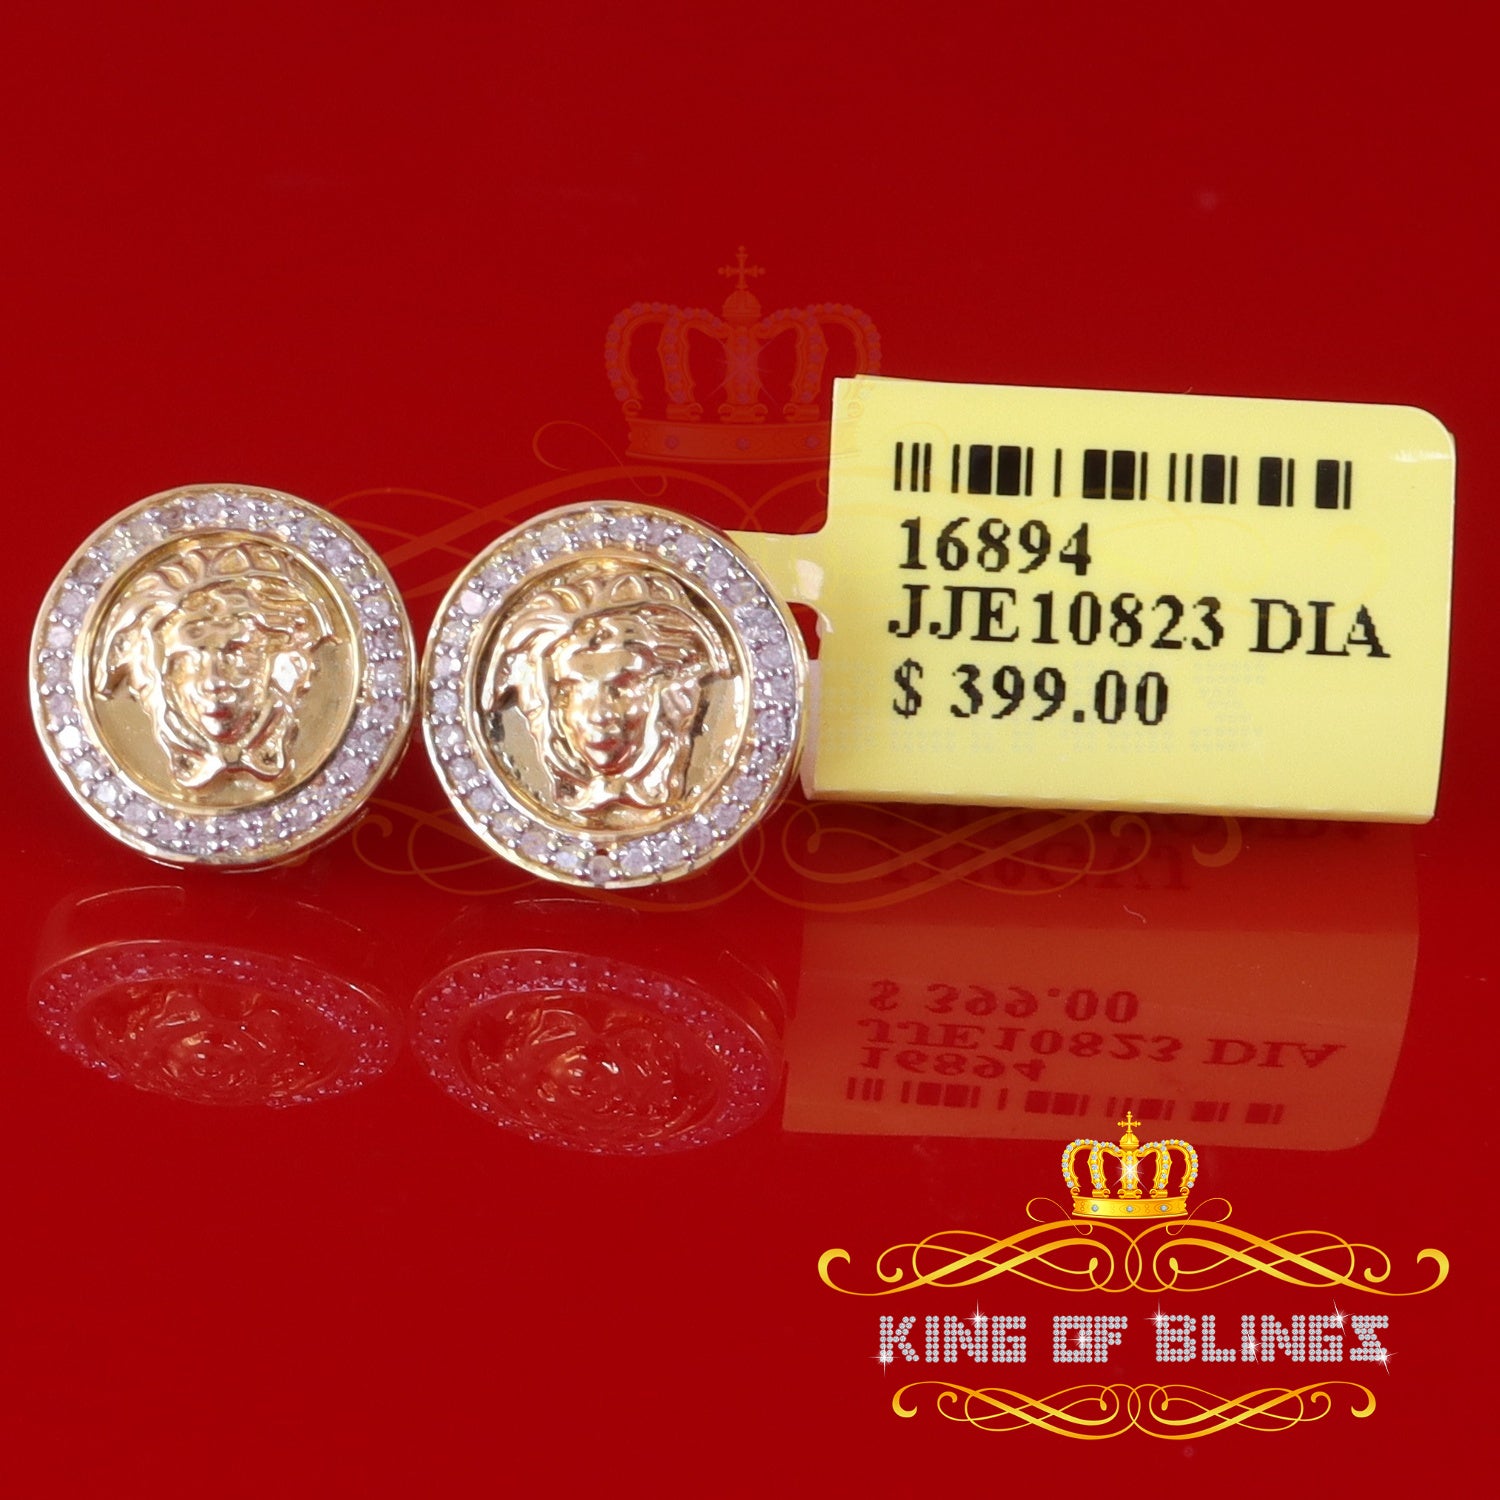 King of Blings-0.20ct Diamond 925 Sterling Yellow Silver for Men's & Womens Stud Medusa Earring KING OF BLINGS